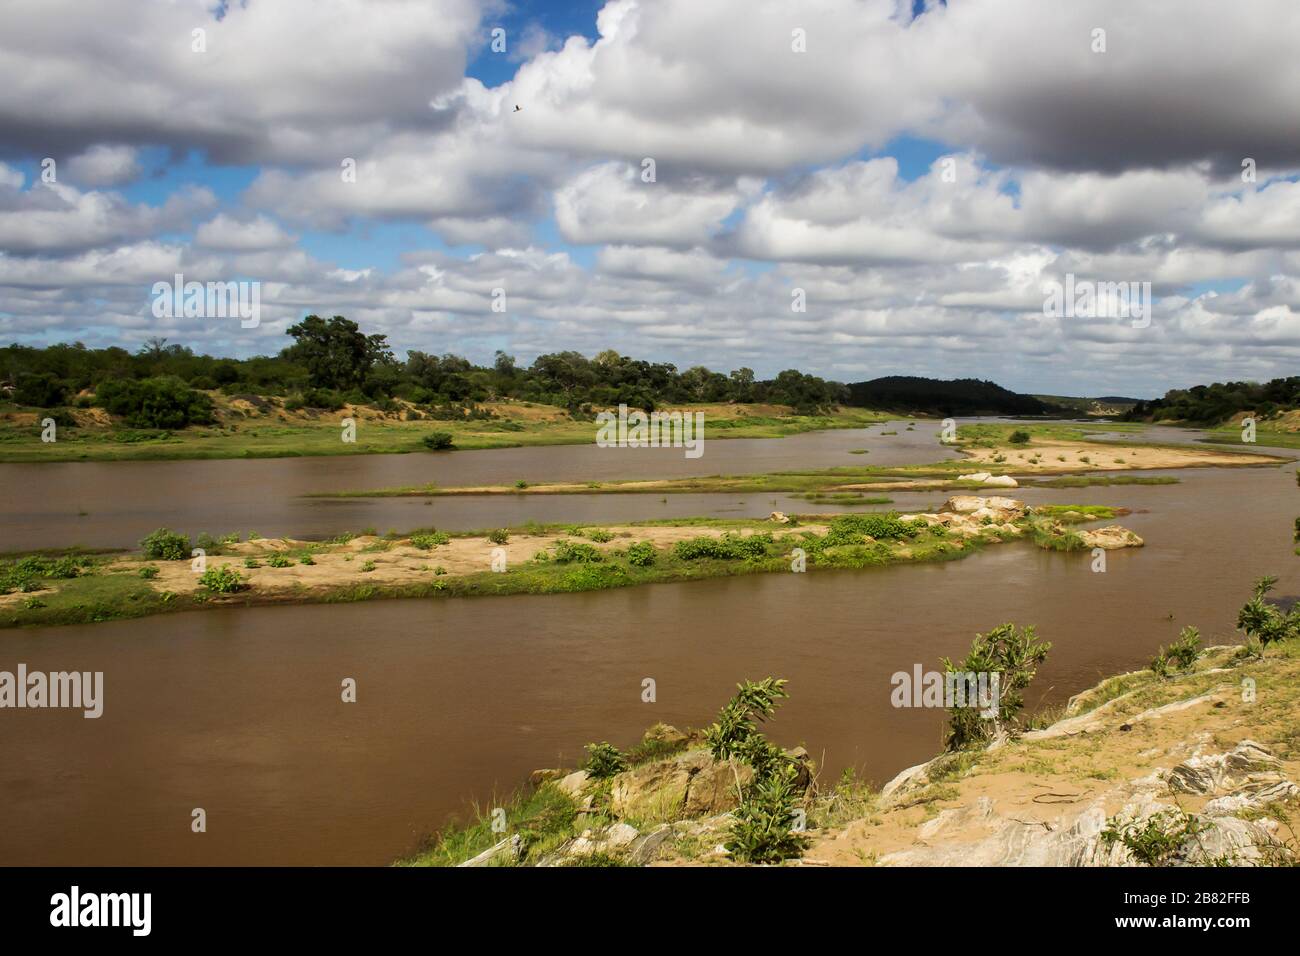 La rivière Olifants, Parc national Kruger, Afrique du Sud, lors d'une journée ensoleillée avec des nuages de cumulus, également connus sous le nom de nuages de beau temps Banque D'Images